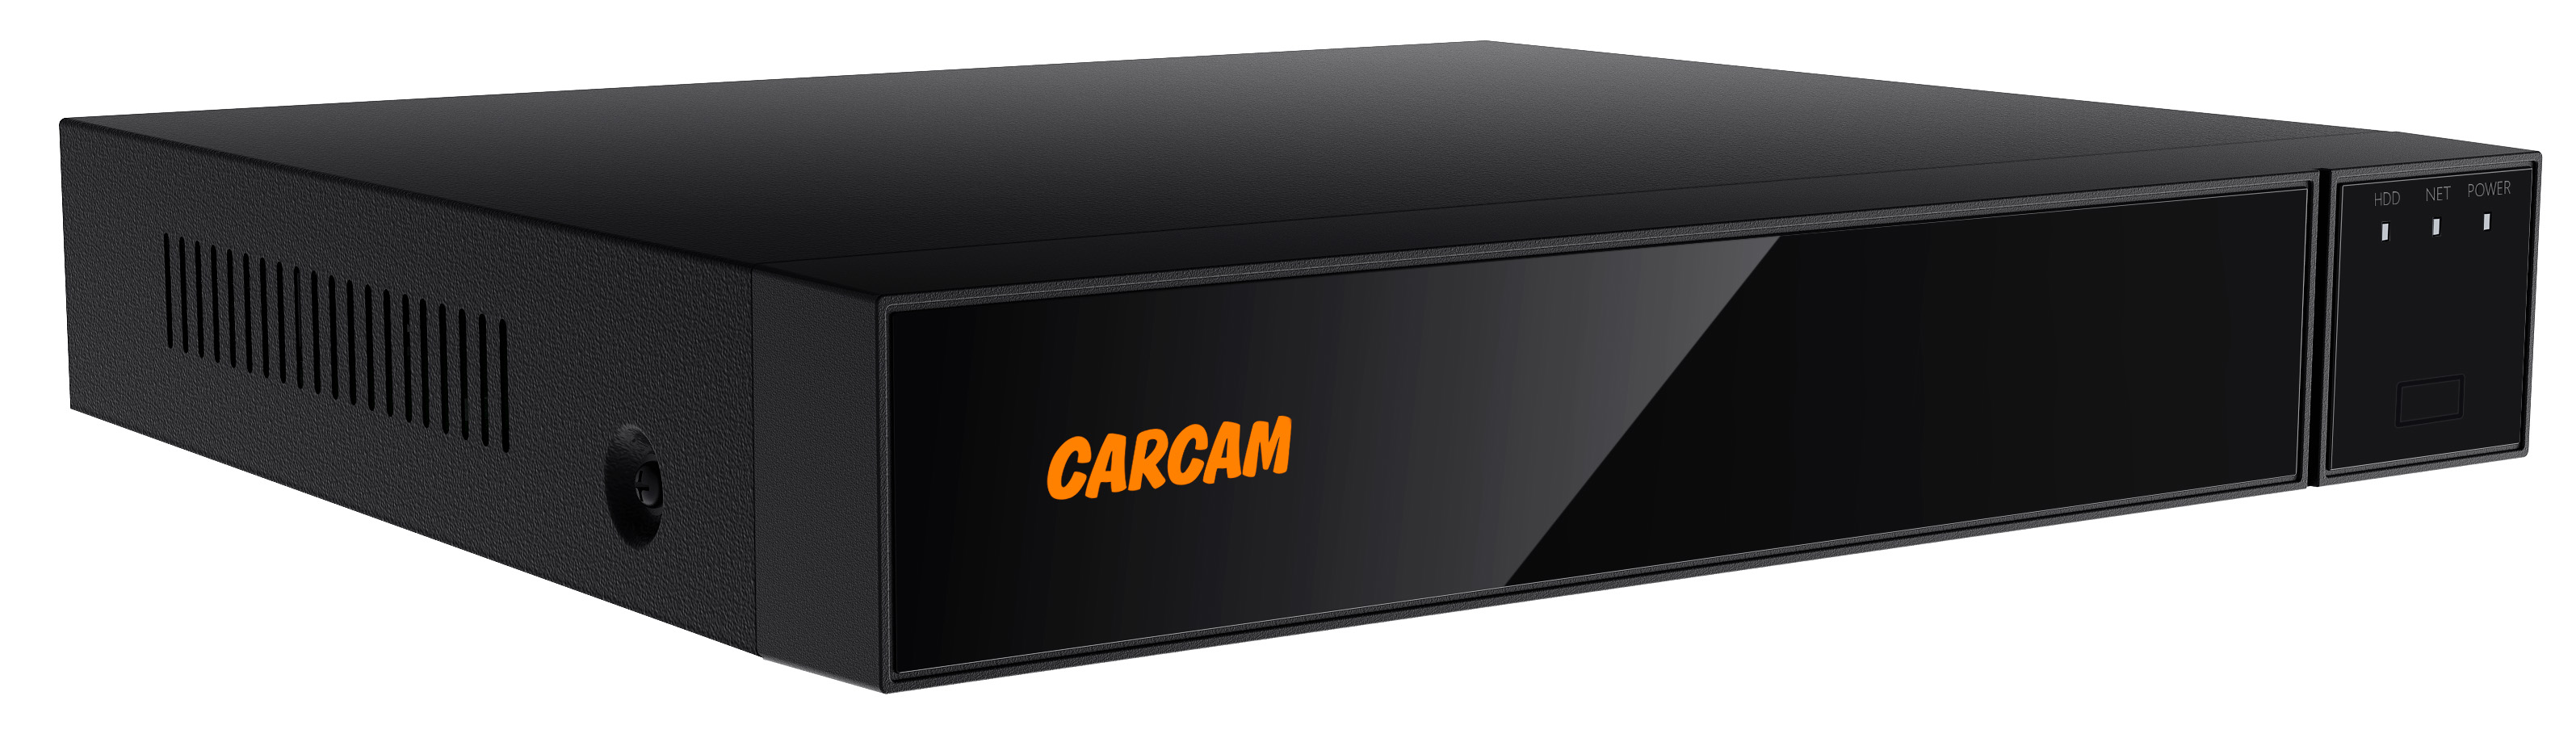 16-канальный гибридный видеорегистратор CARCAM 16CH XVR 8716 видеорегистратор гибридный rexant 4 канальный ahd hdvr 5 0 без hdd